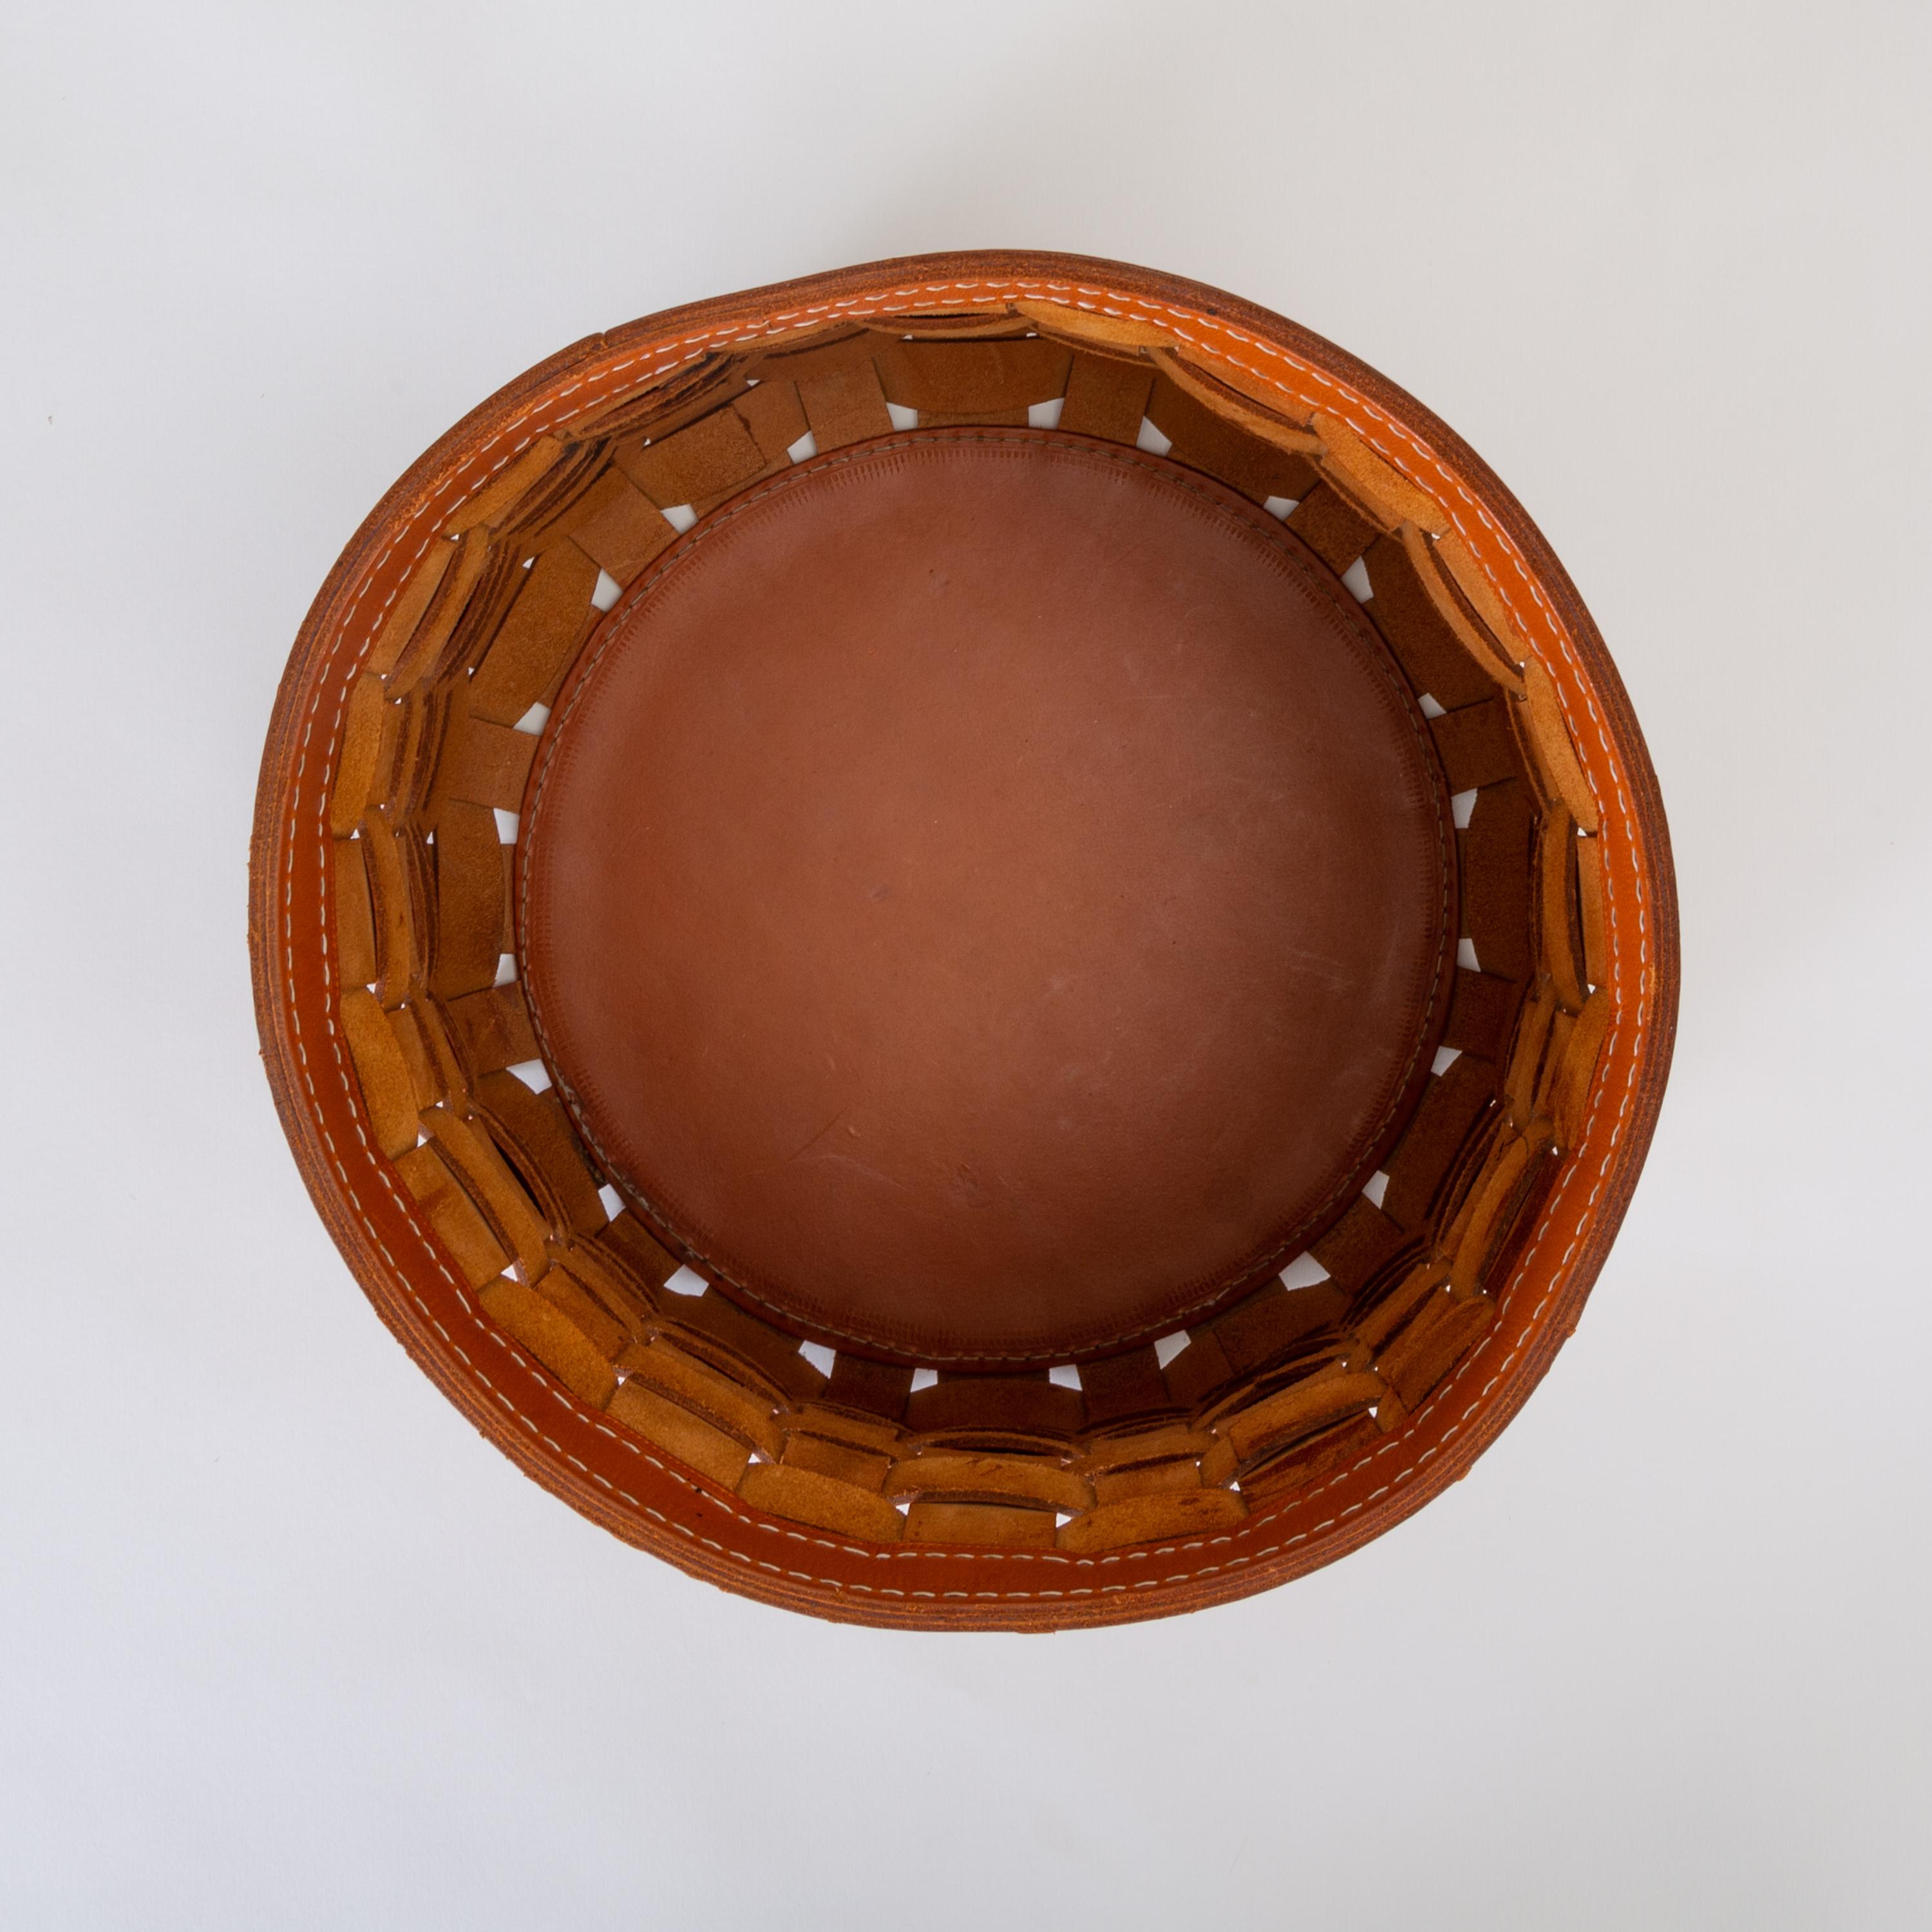 Italian “Intrecci” Round Basket in Woven Leather by Arte Cuoio & Triangolo